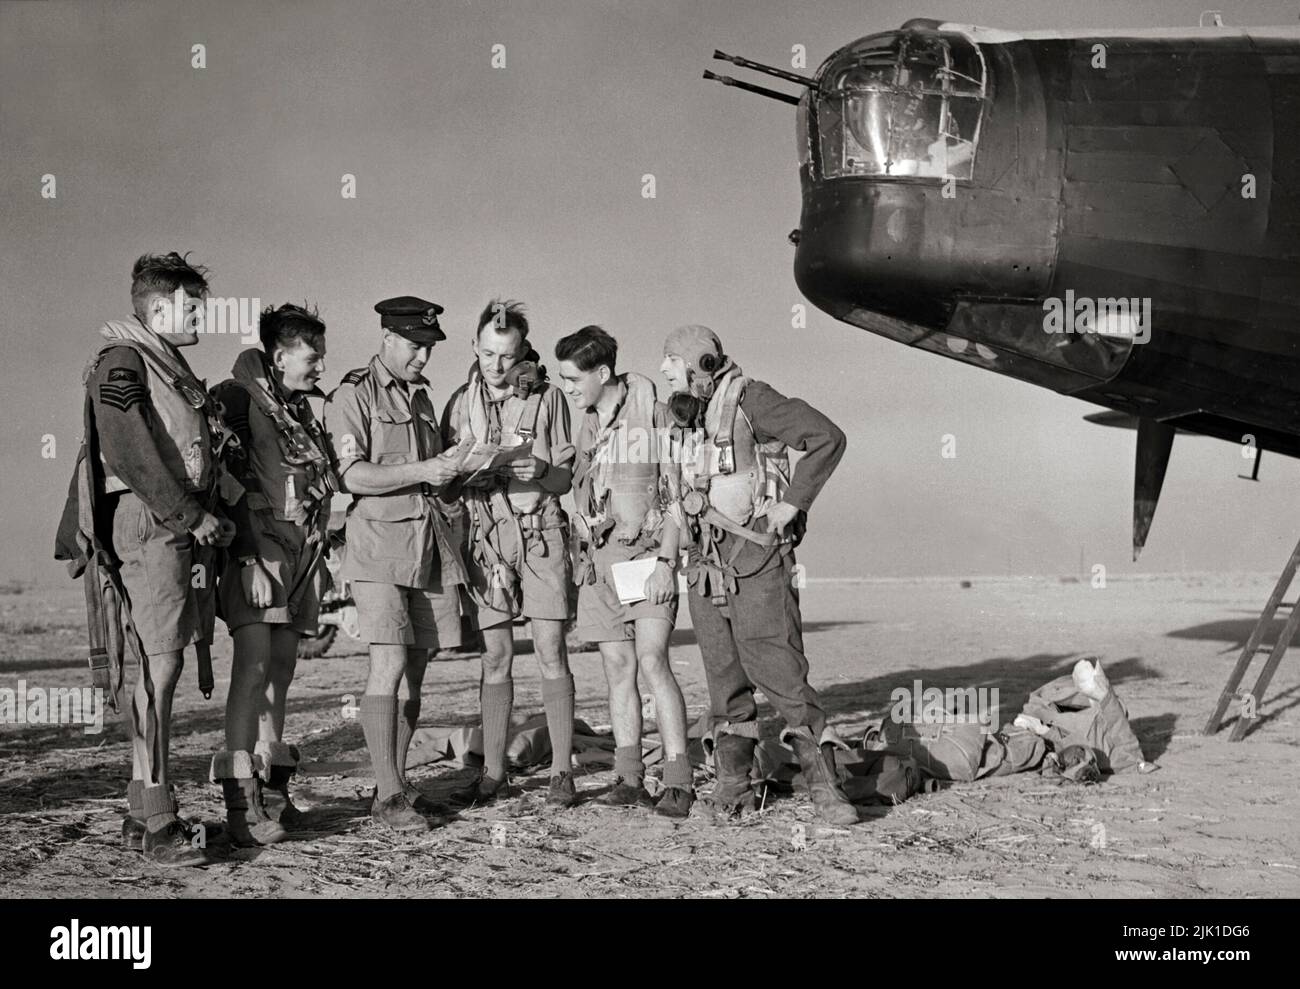 La tripulación de un Vickers Wellington Mark X del Escuadrón 150 de la RAF recibe una información final de su comandante de vuelo antes de despegar de Kairouan, Túnez, para una incursión en objetivos en el área de Salerno el día antes de los aterrizajes Aliados. El Wellington fue un bombardero medio de largo alcance bimotor británico diseñado a mediados de los años 1930s, utilizado como bombardero nocturno en los primeros años de la Segunda Guerra Mundial, hasta que fue reemplazado por los 'heavies' de cuatro motores más grandes, como el Avro Lancaster. Tiene la distinción de haber sido el único bombardero británico producido durante la guerra. Foto de stock